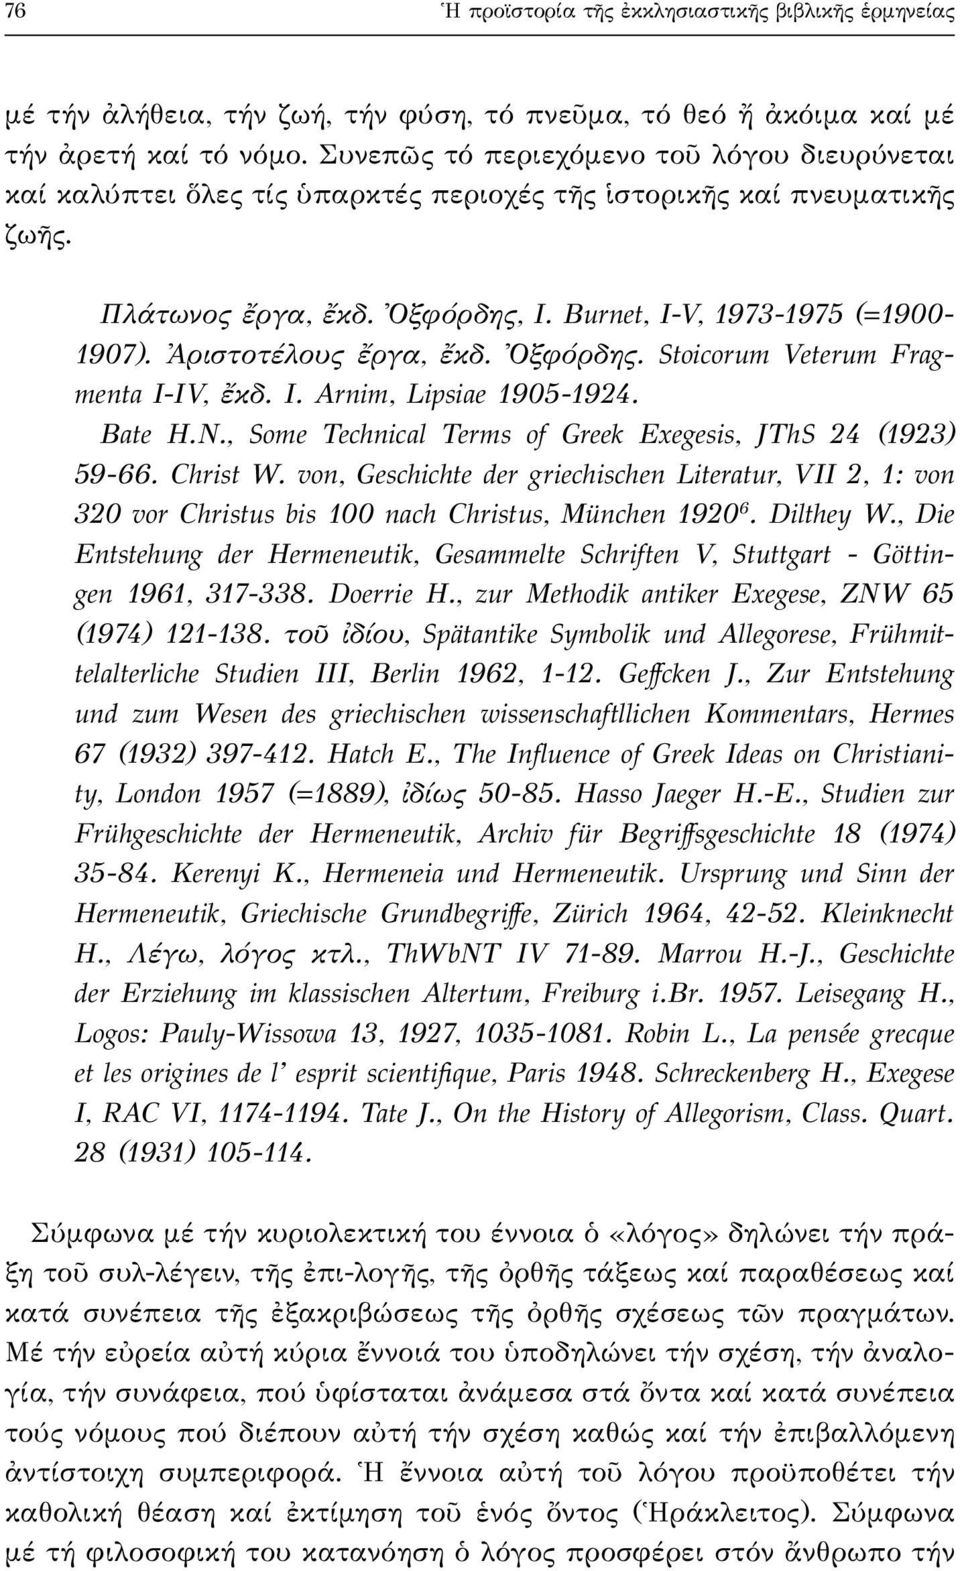 Ἀριστοτέλους ἔργα, ἔκδ. Ὀξφόρδης. Stoicorum Veterum Fragmenta I-IV, ἔκδ. I. Arnim, Lipsiae 1905-1924. Bate H.N., Some Technical Terms of Greek Exegesis, JThS 24 (1923) 59-66. Christ W.